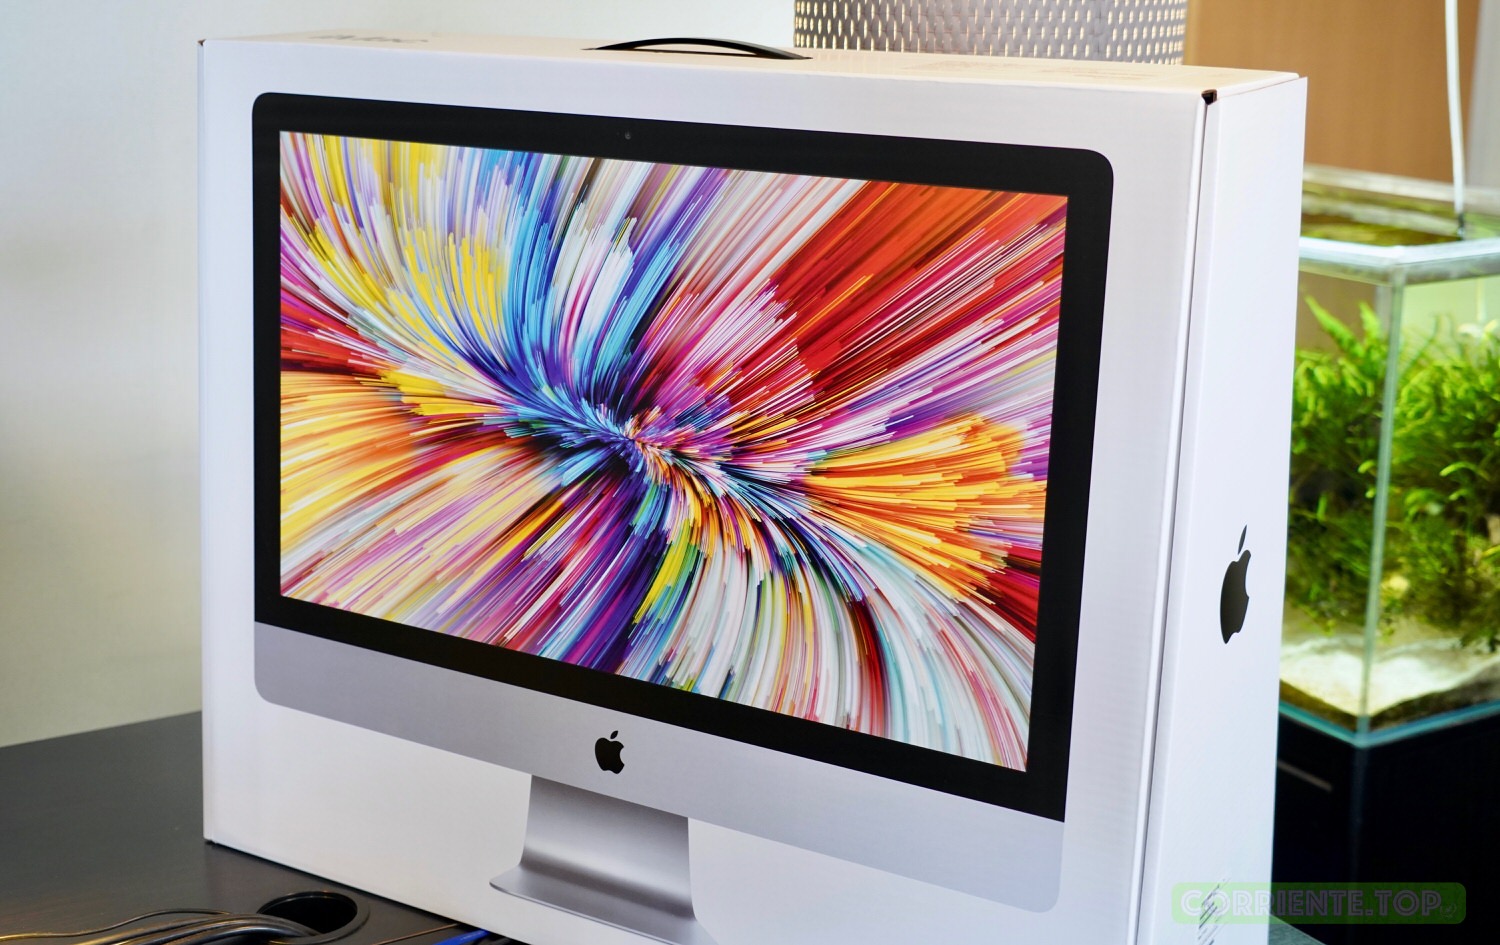 100 ％品質保証 iMac 27インチ 5K A1419 304 デスクトップ型PC